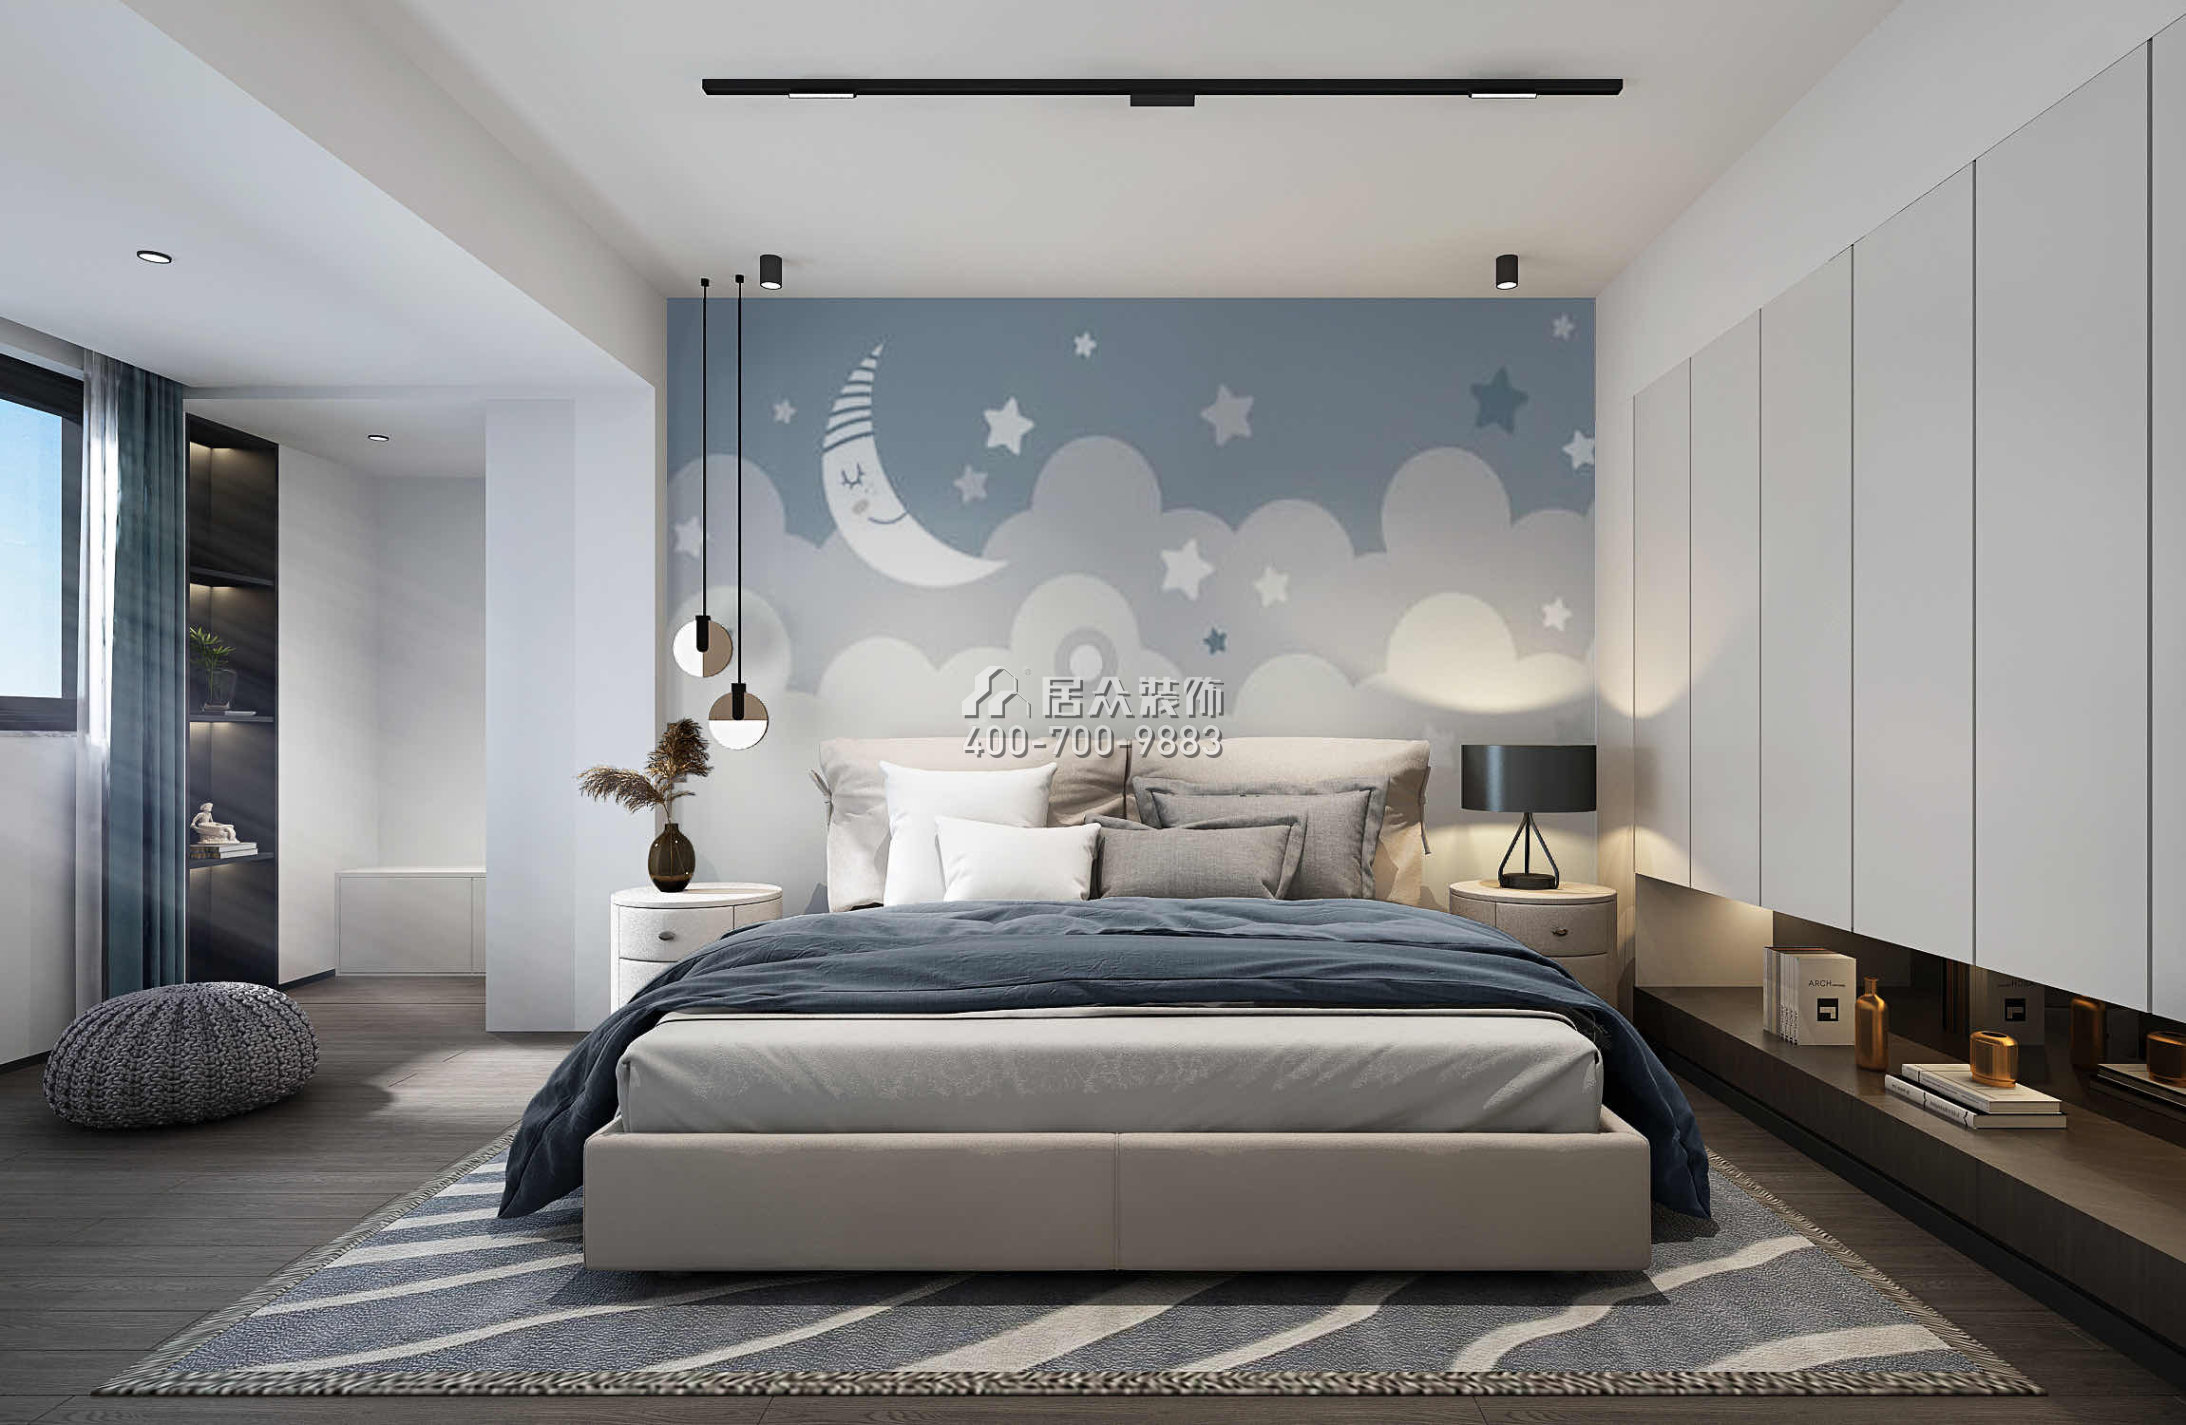 瑞景新村150平方米现代简约风格复式户型卧室装修效果图